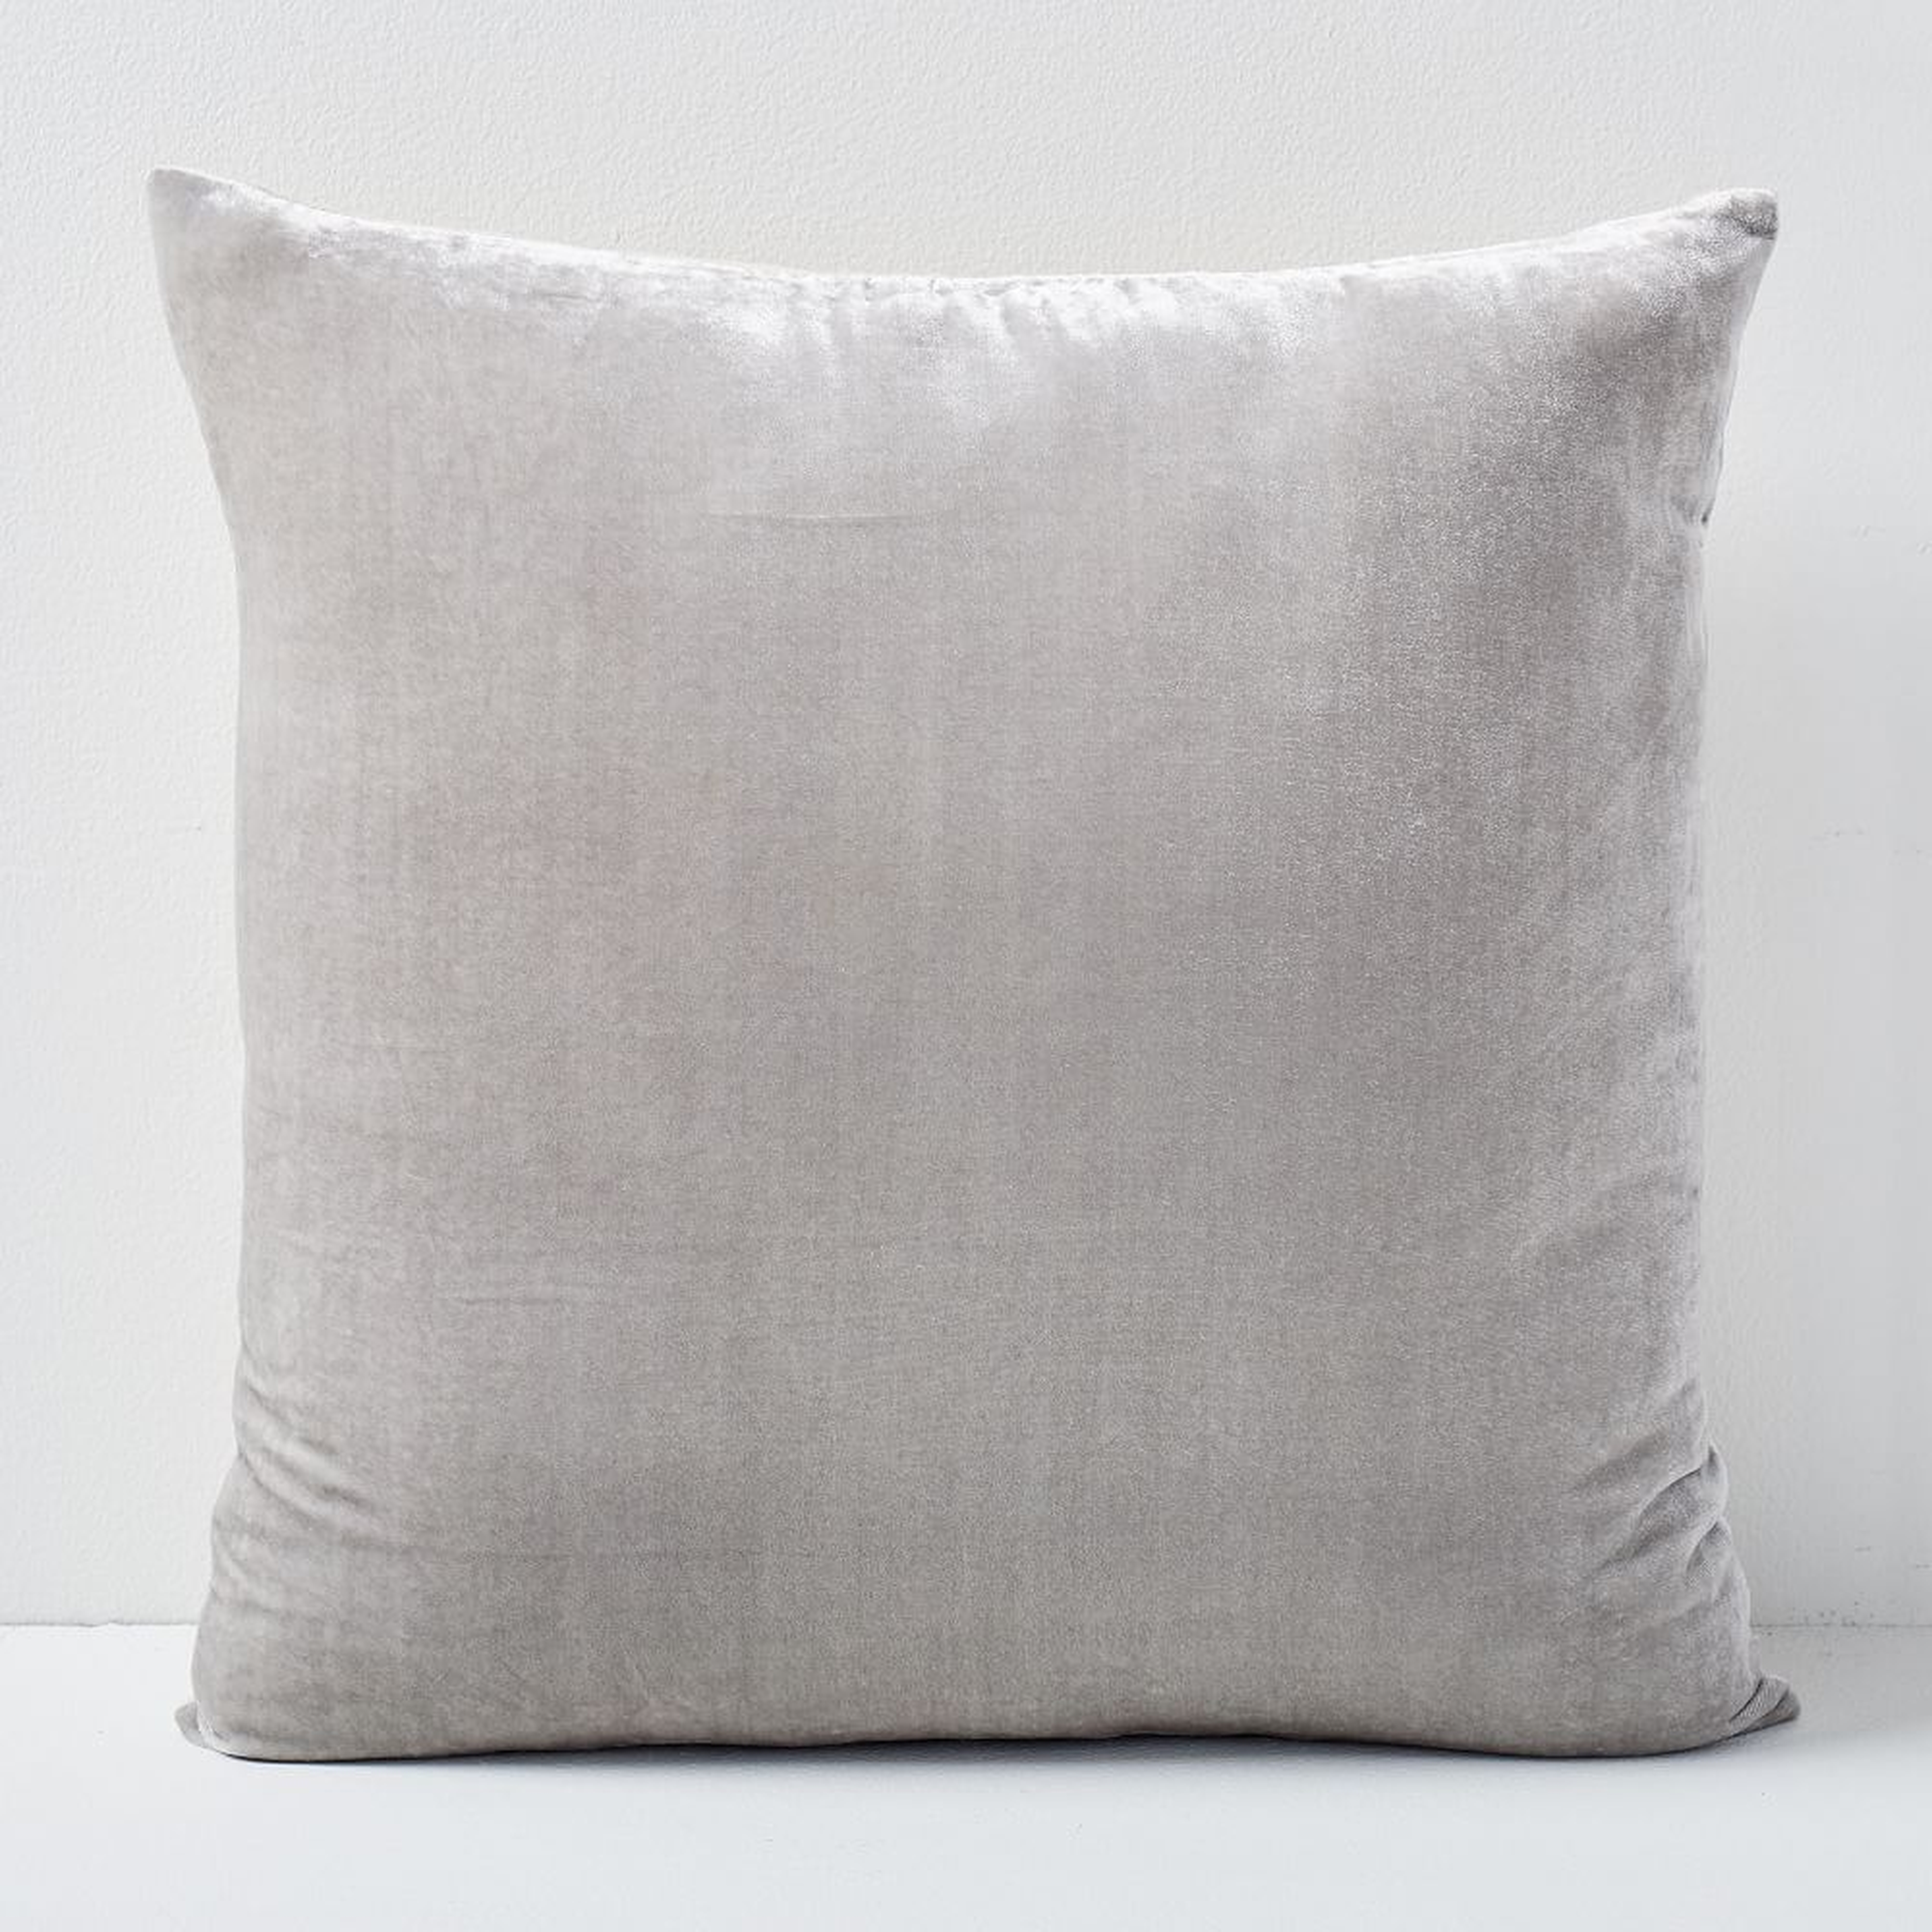 Lush Velvet Pillow Cover, 20"x20", Pearl Gray, Set of 2 - West Elm